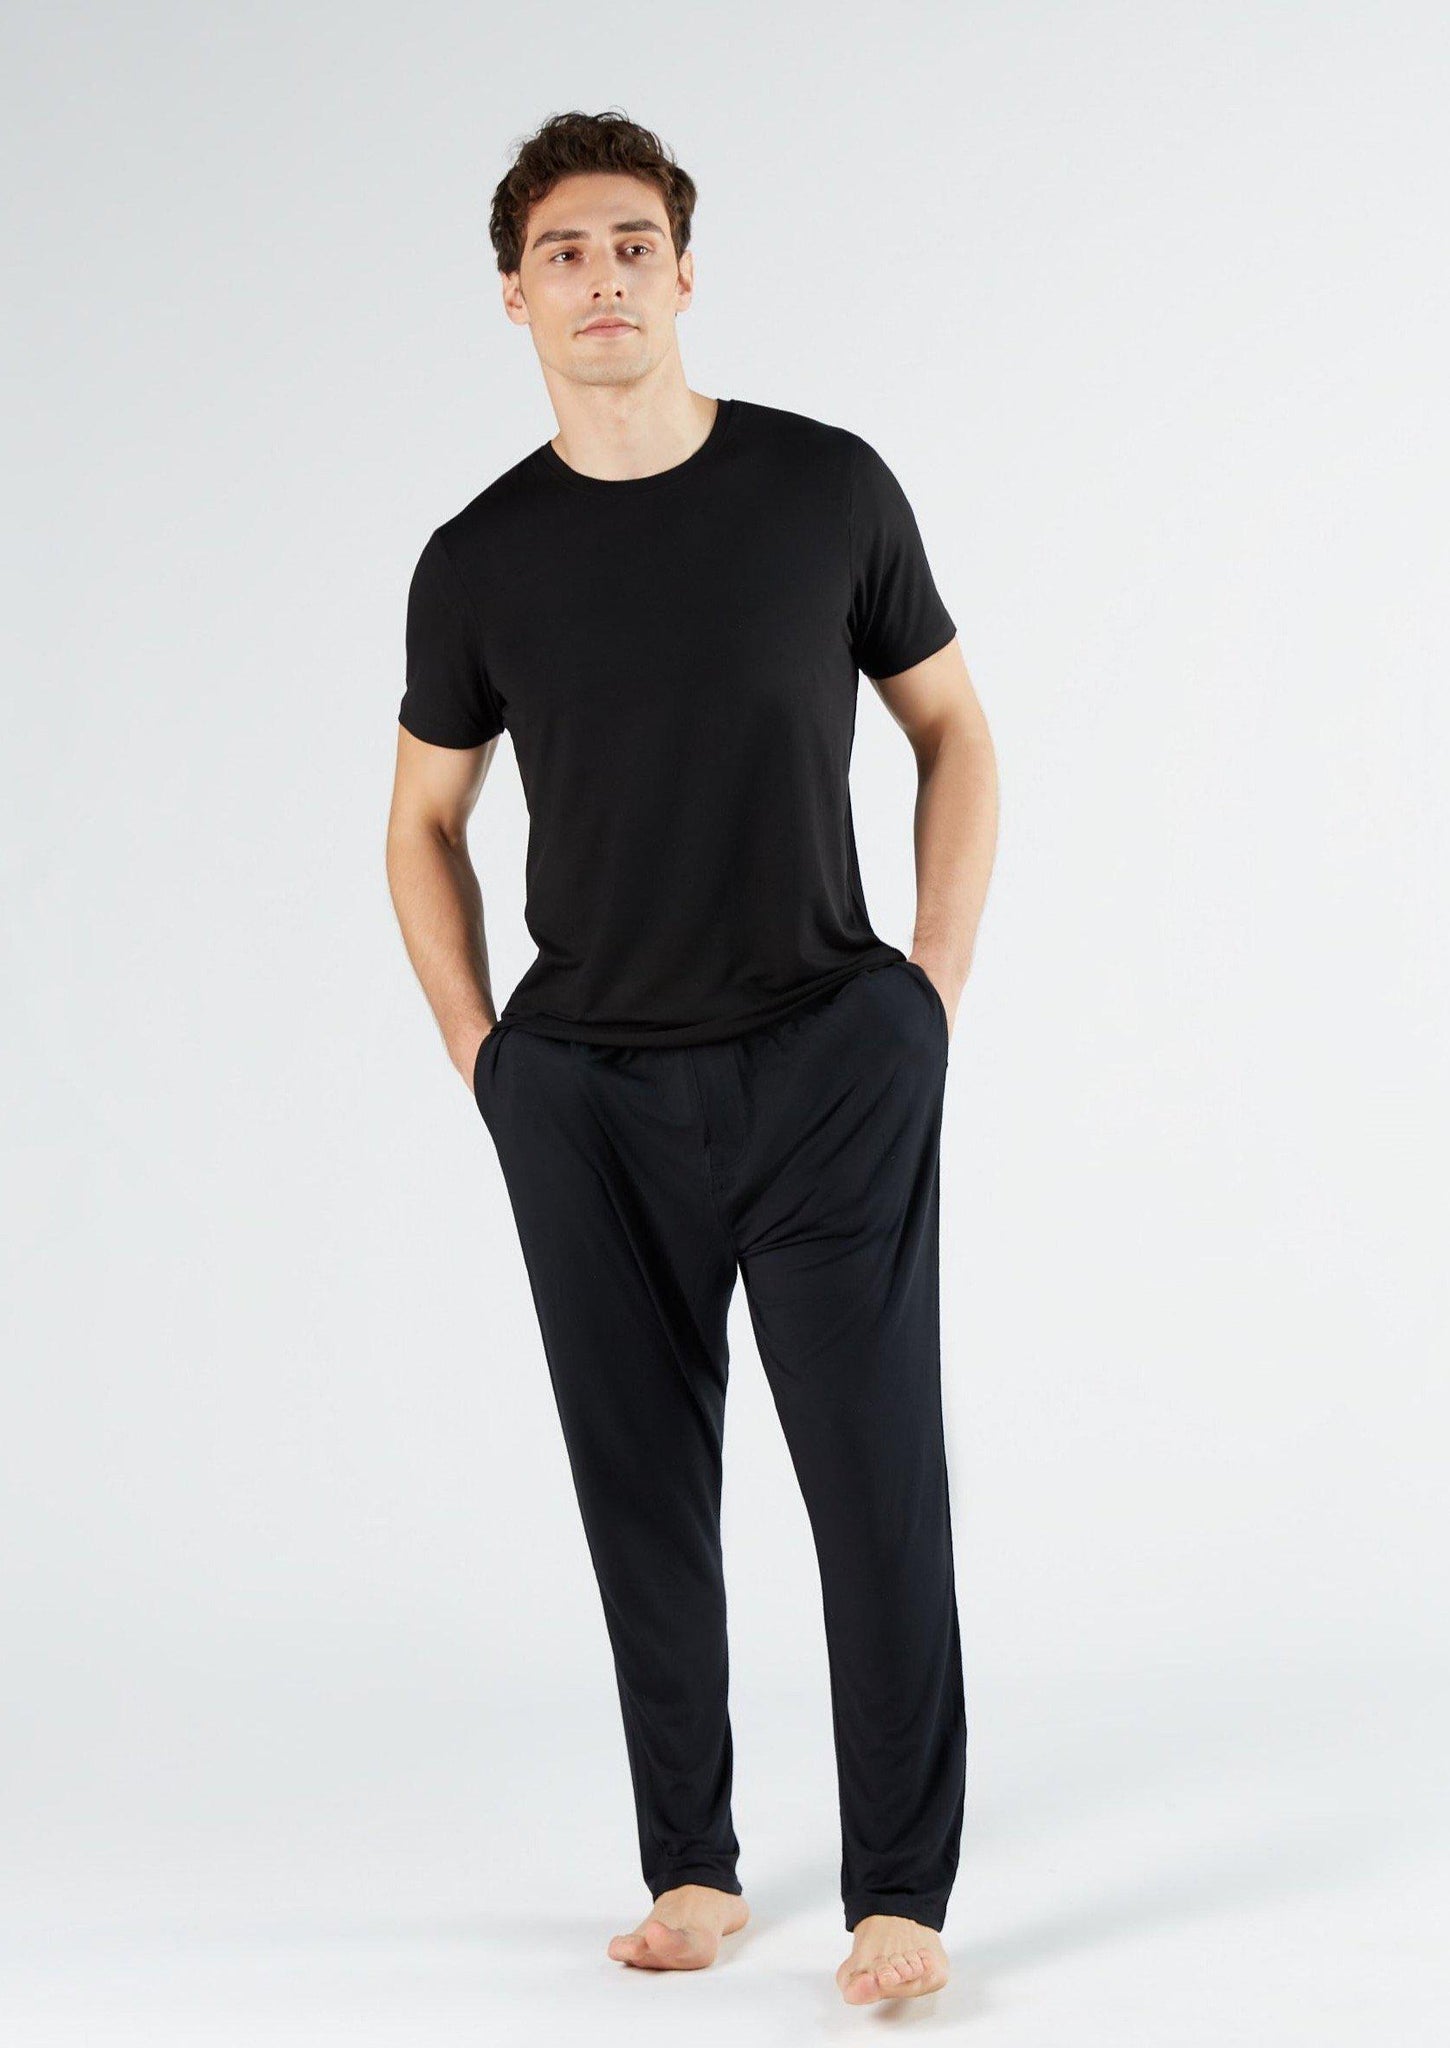 Men's TENCEL Modal Short-Sleeve Basic T-shirt 3-Pack